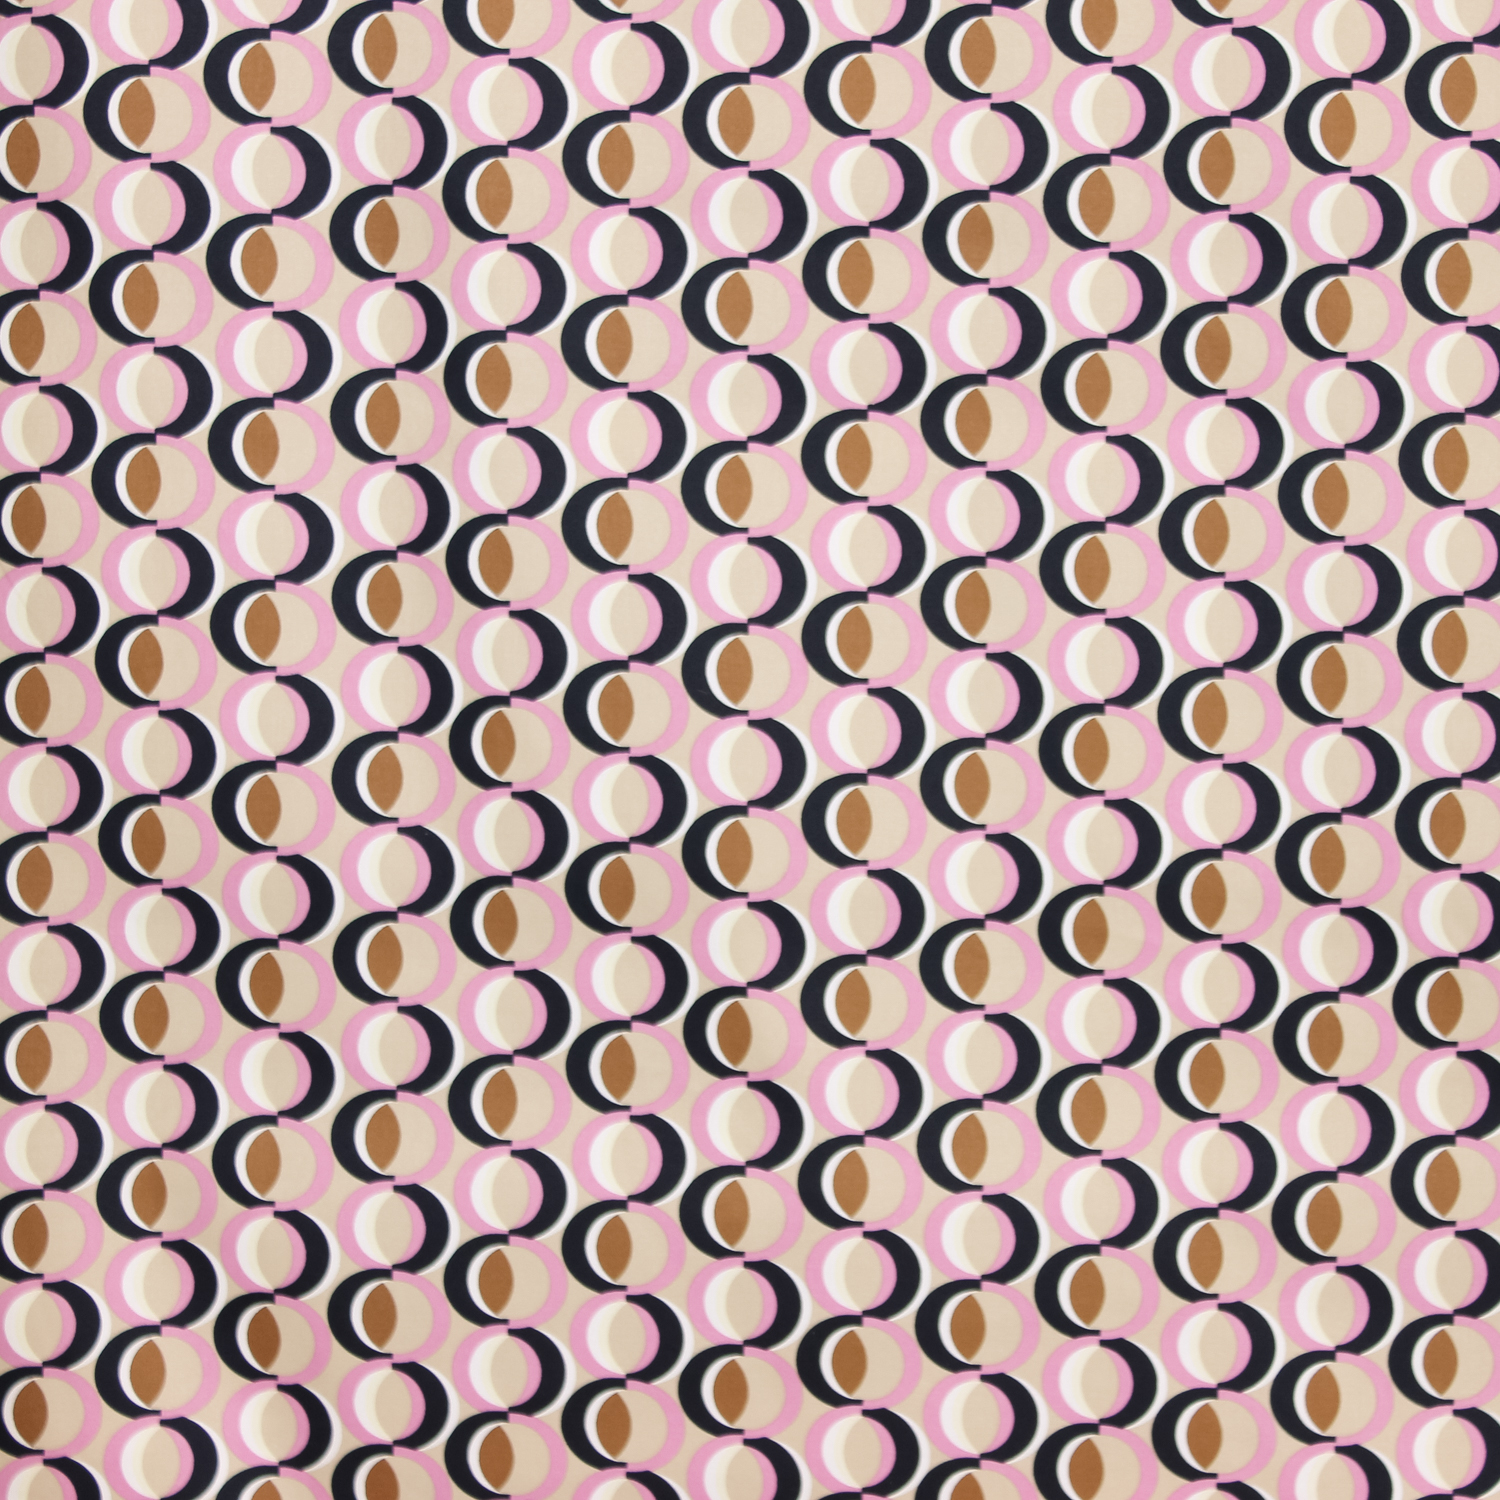 Stretch katoen beige met abstract roze patroon